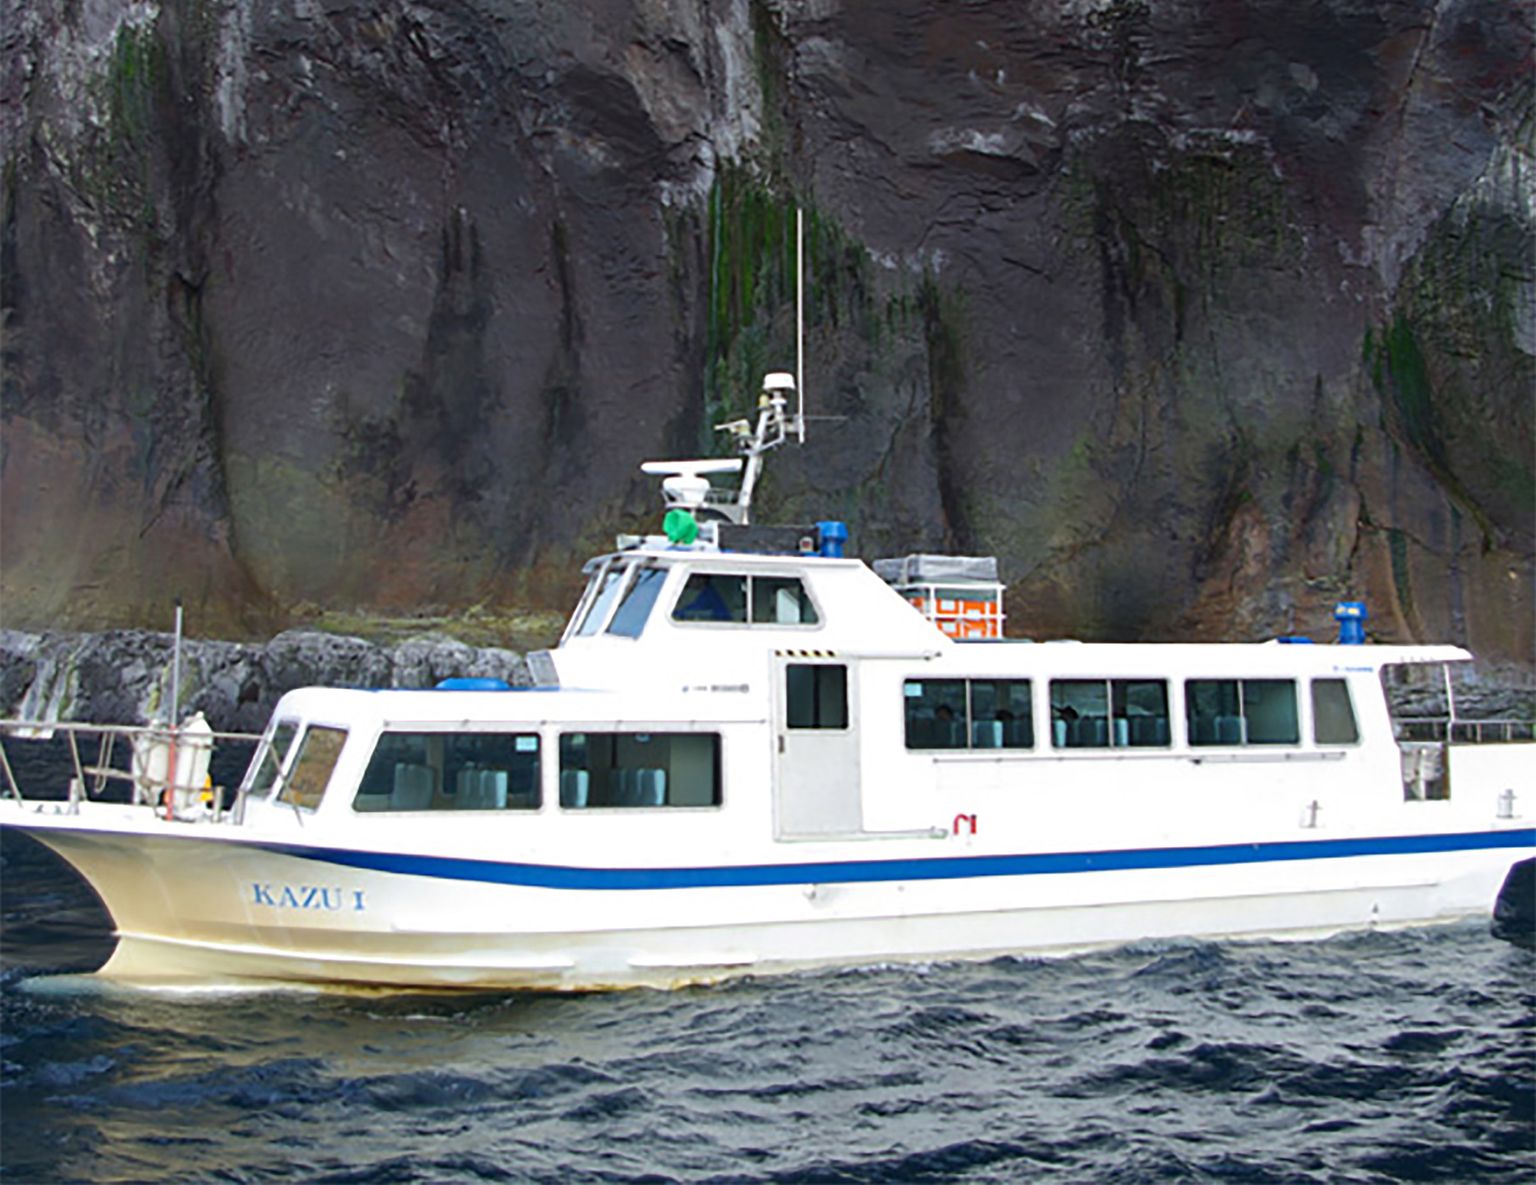 Jaapani ranniku lähedal uppus turismilaev Kazu 1.